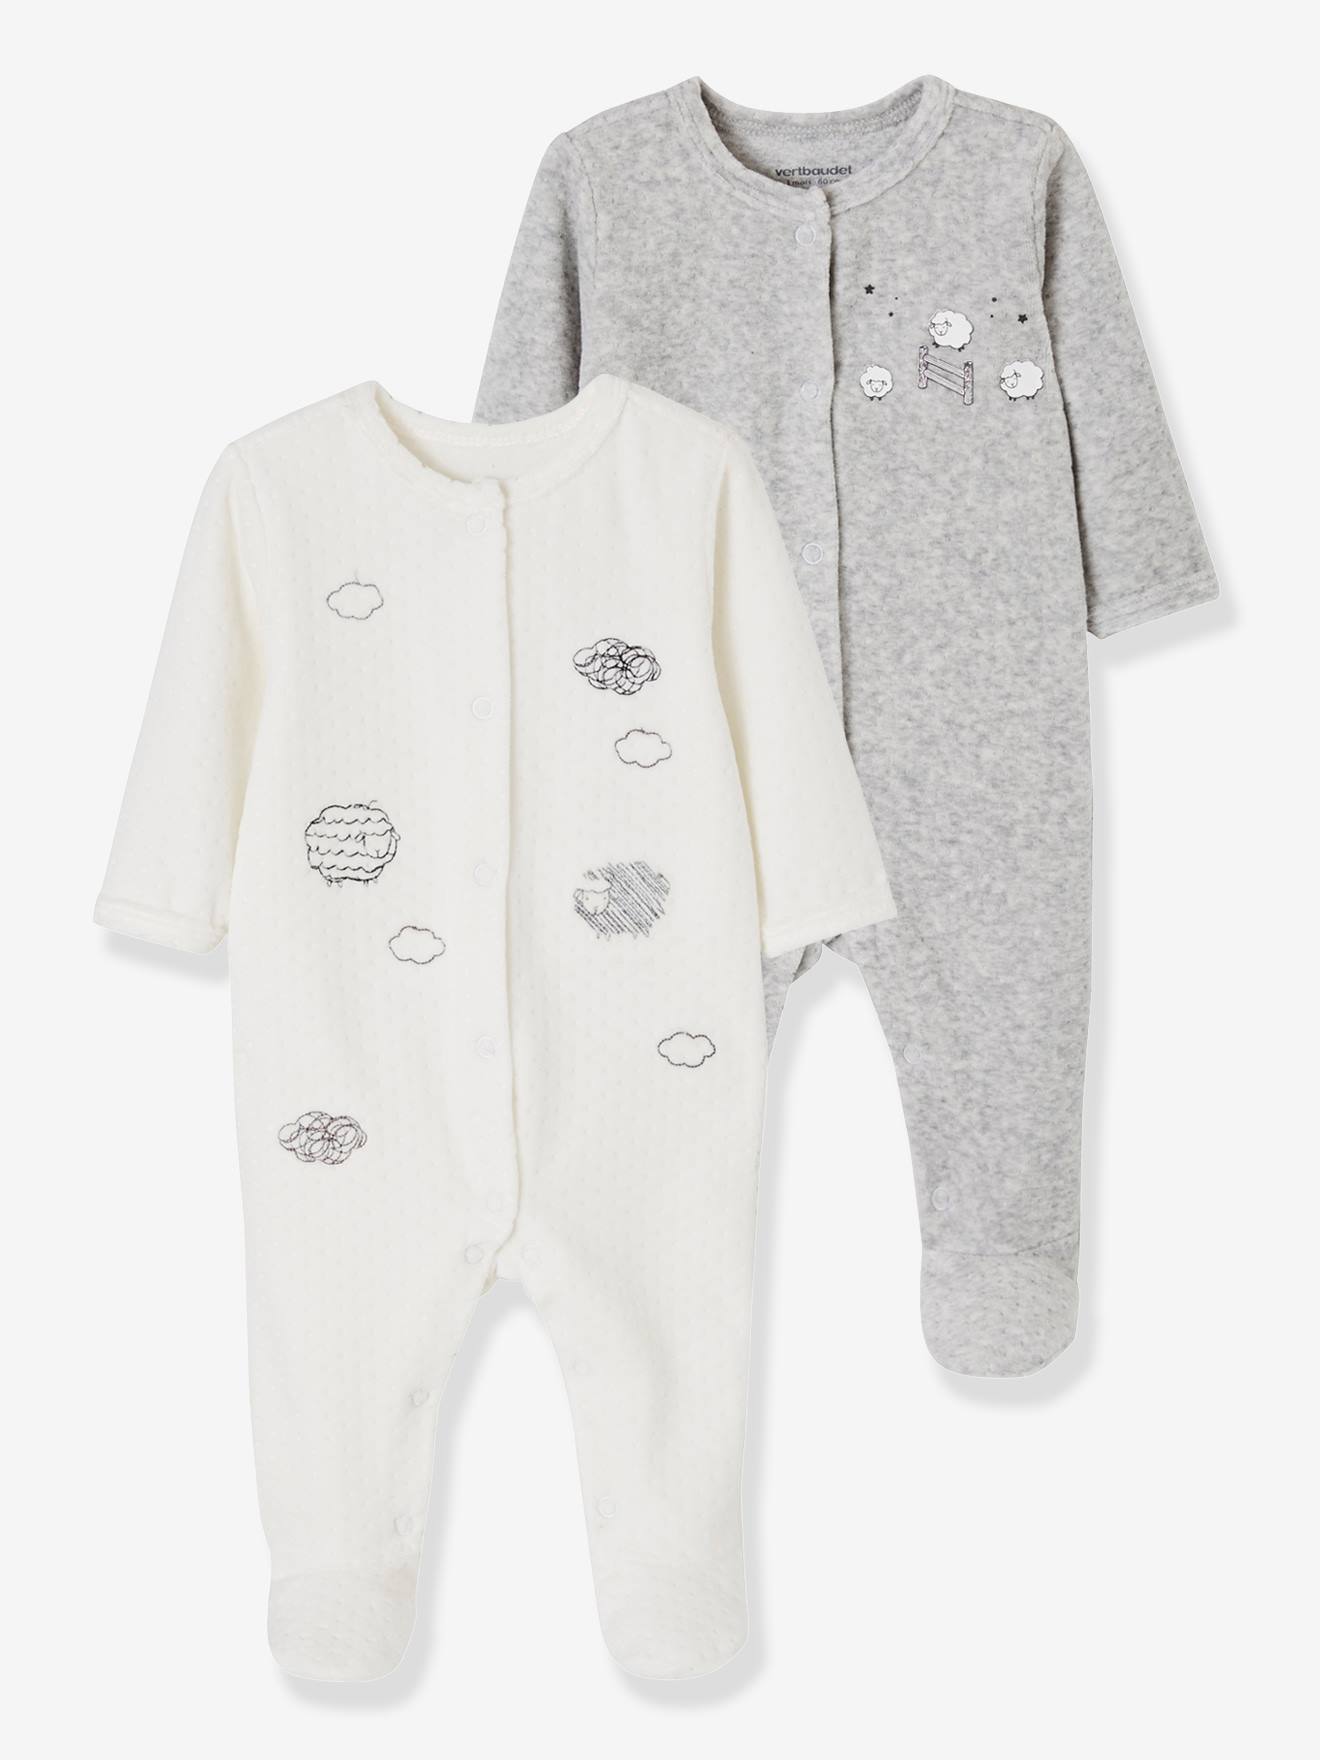 velour baby sleepsuits